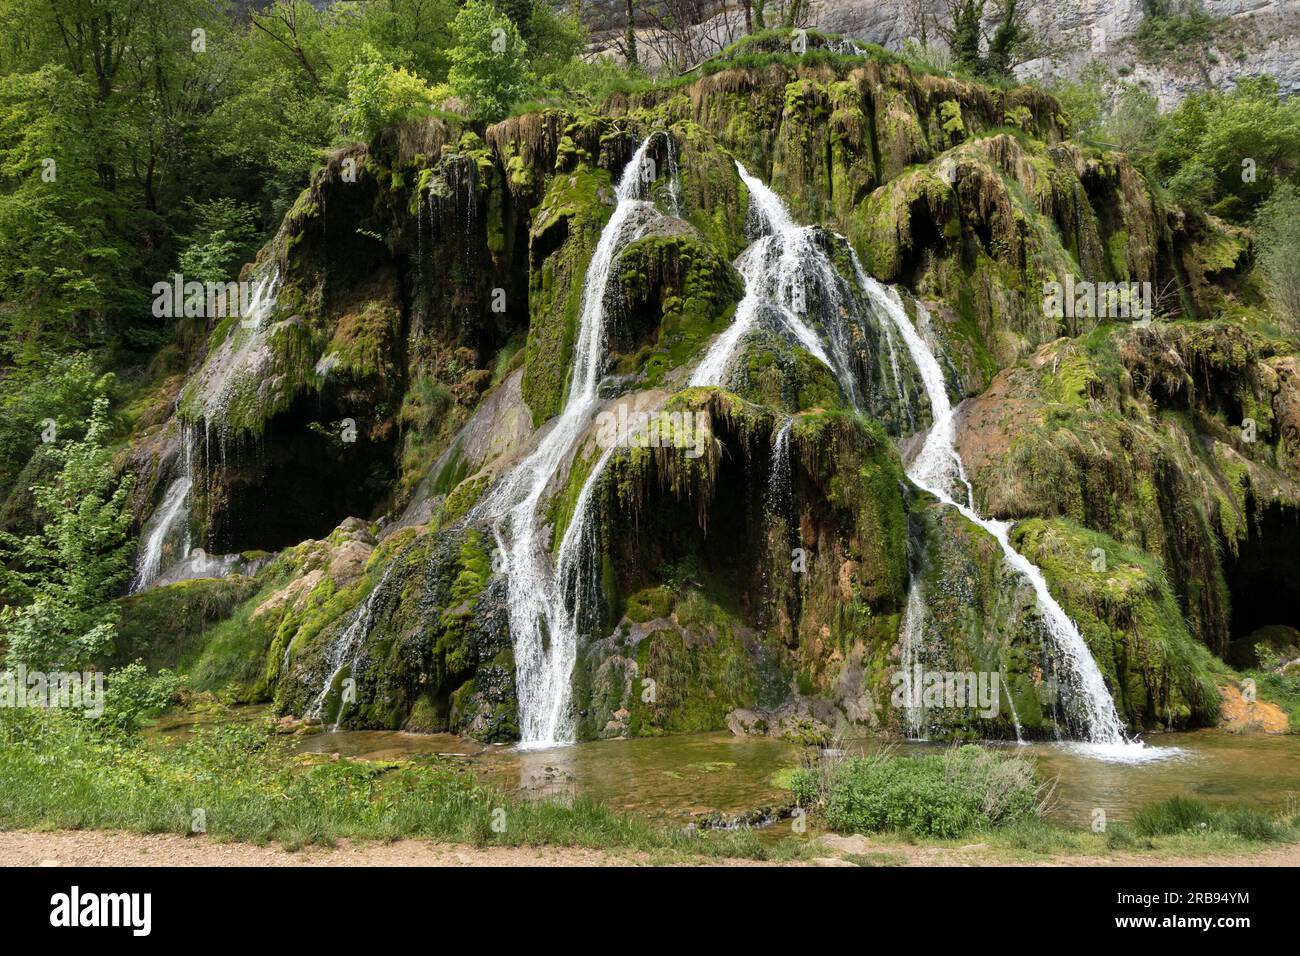 Cascades de Baume-les-Messieurs, Jura, Bourgogne-Franche-Comté, France, Stock Photo